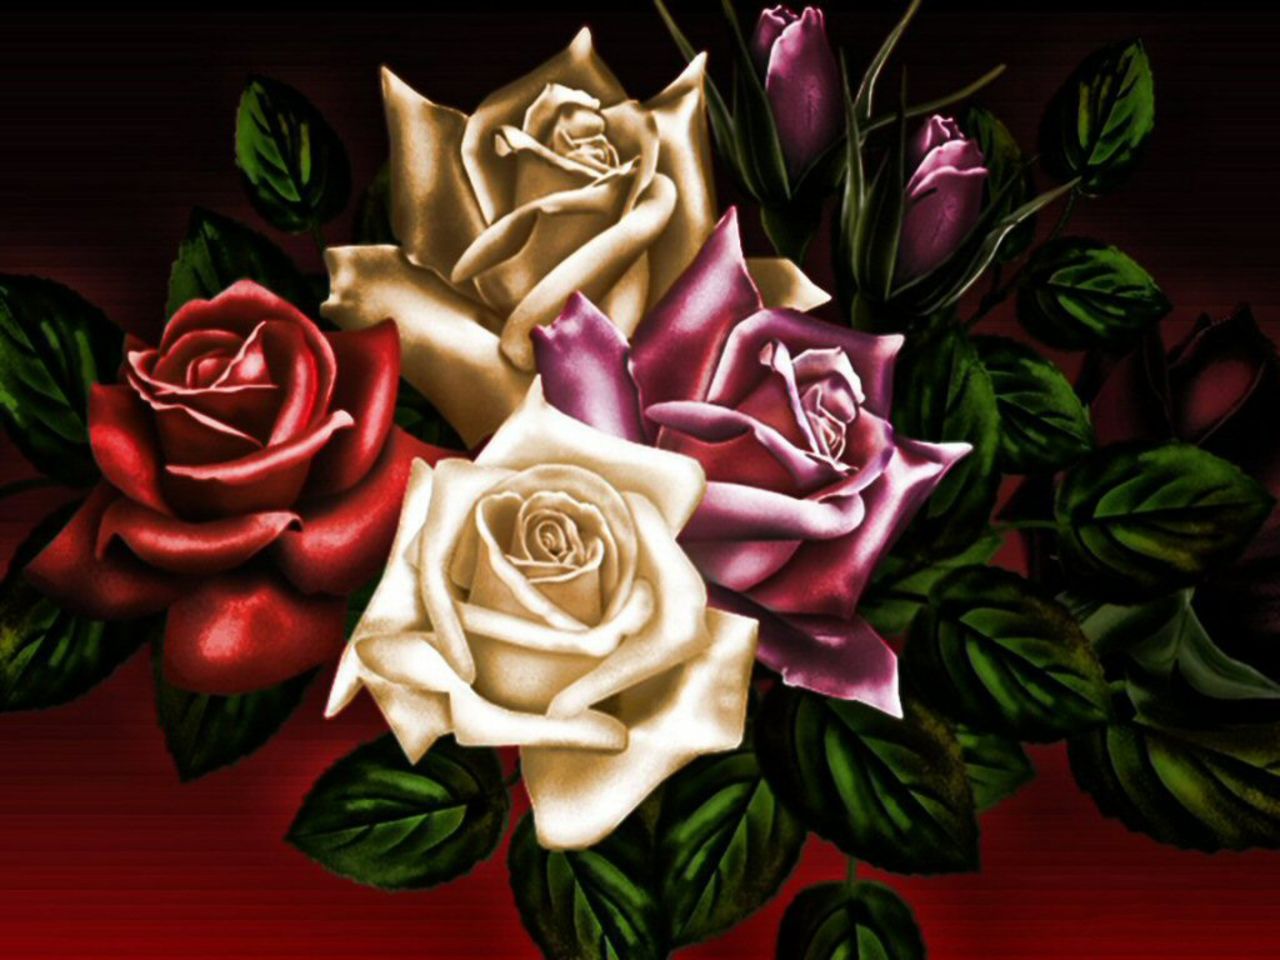 Скачать обои бесплатно Цветок, Роза, Художественные картинка на рабочий стол ПК